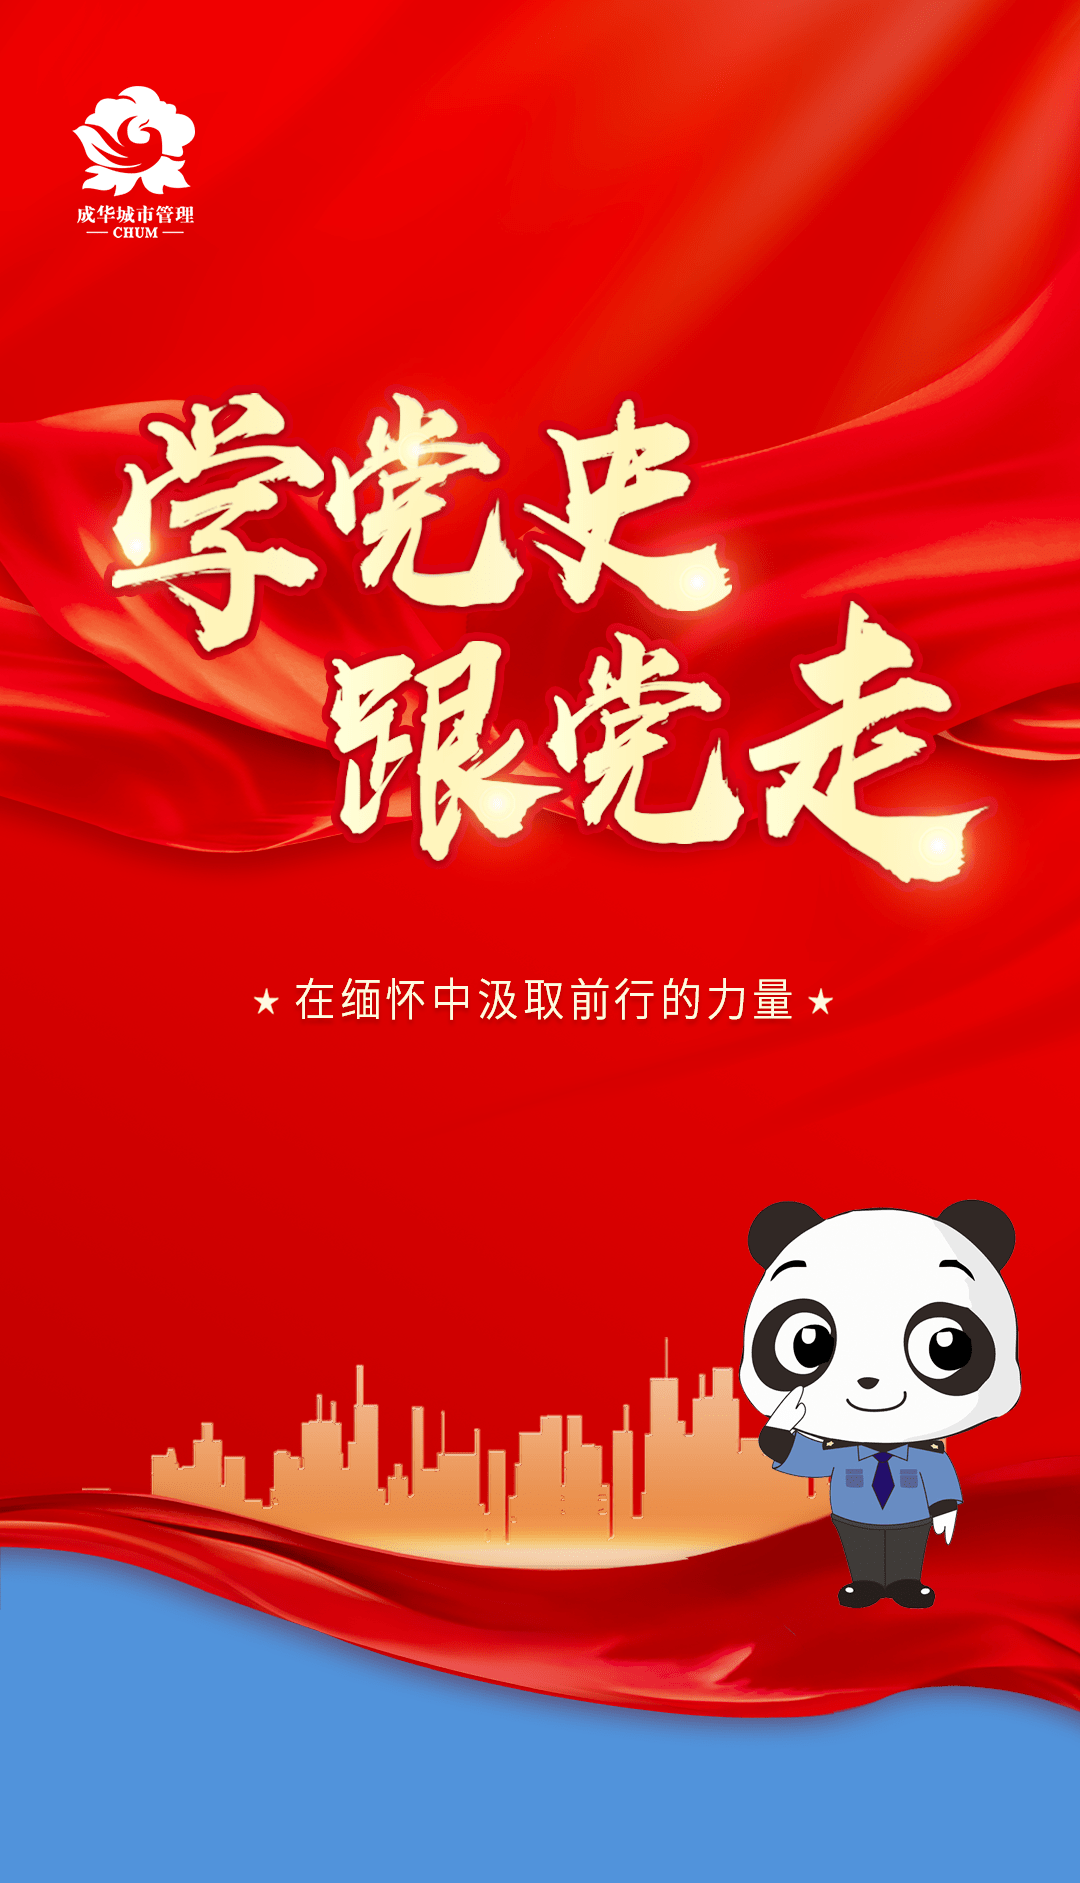 5月27日,成华区综合行政执法局组织党员干部开展"学党史,祭英烈,守